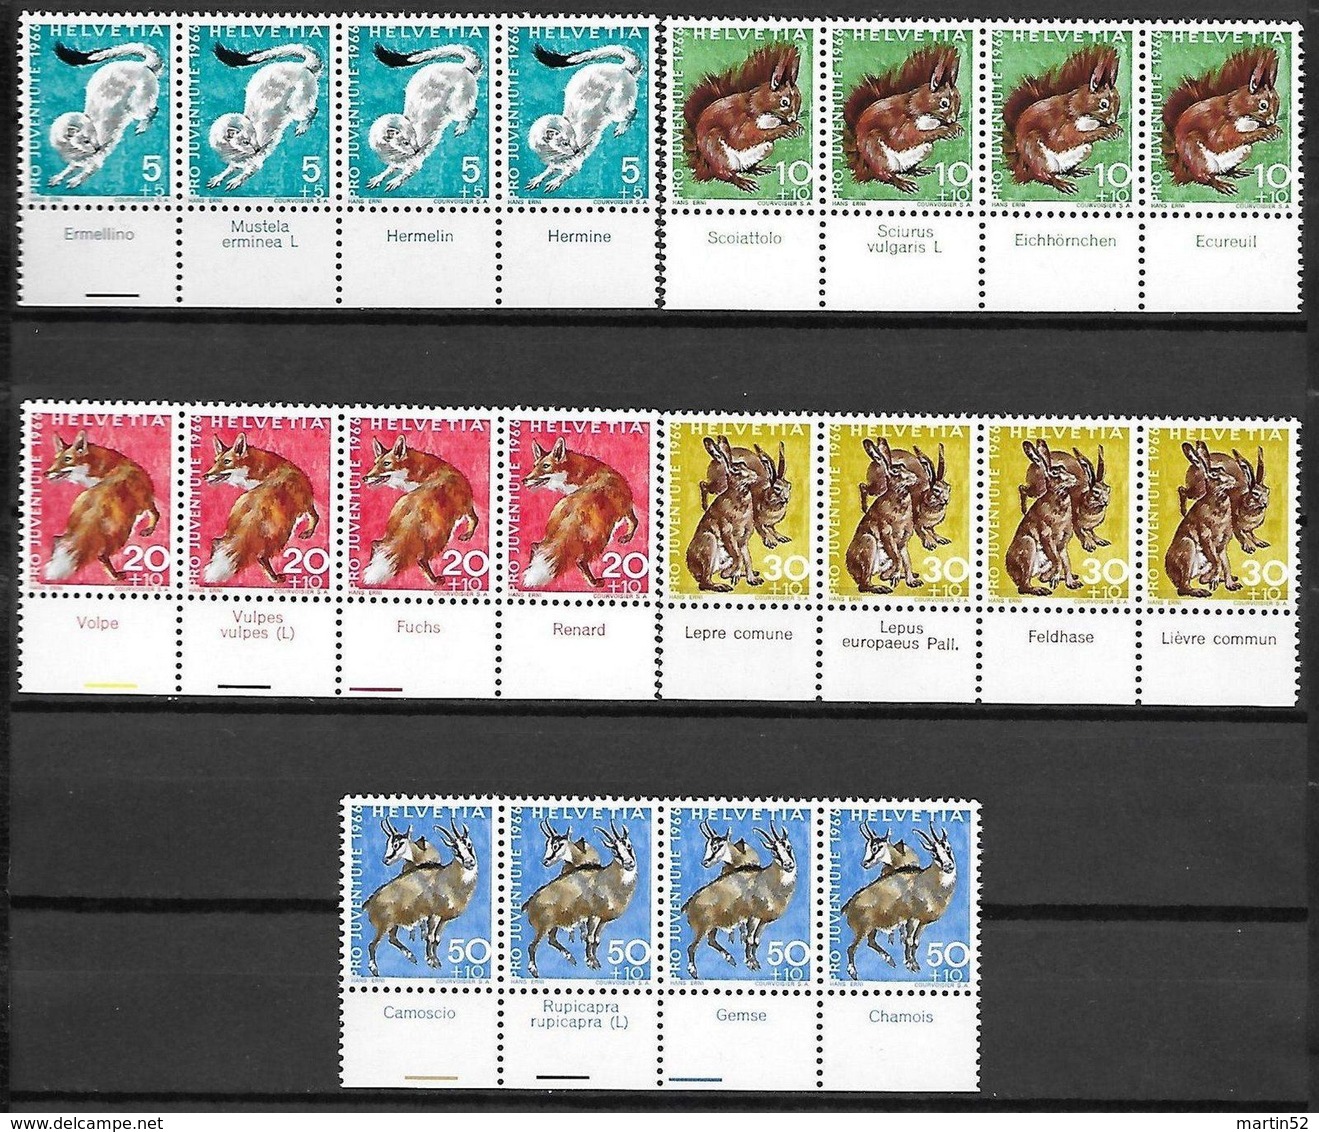 Schweiz Suisse 1965/66: Pro Juventute Zu WI 210-219  Wildtiere Animaux Sauvage ERNI ** MNH + Tab 4-sprachig (CHF 68.80) - Selvaggina